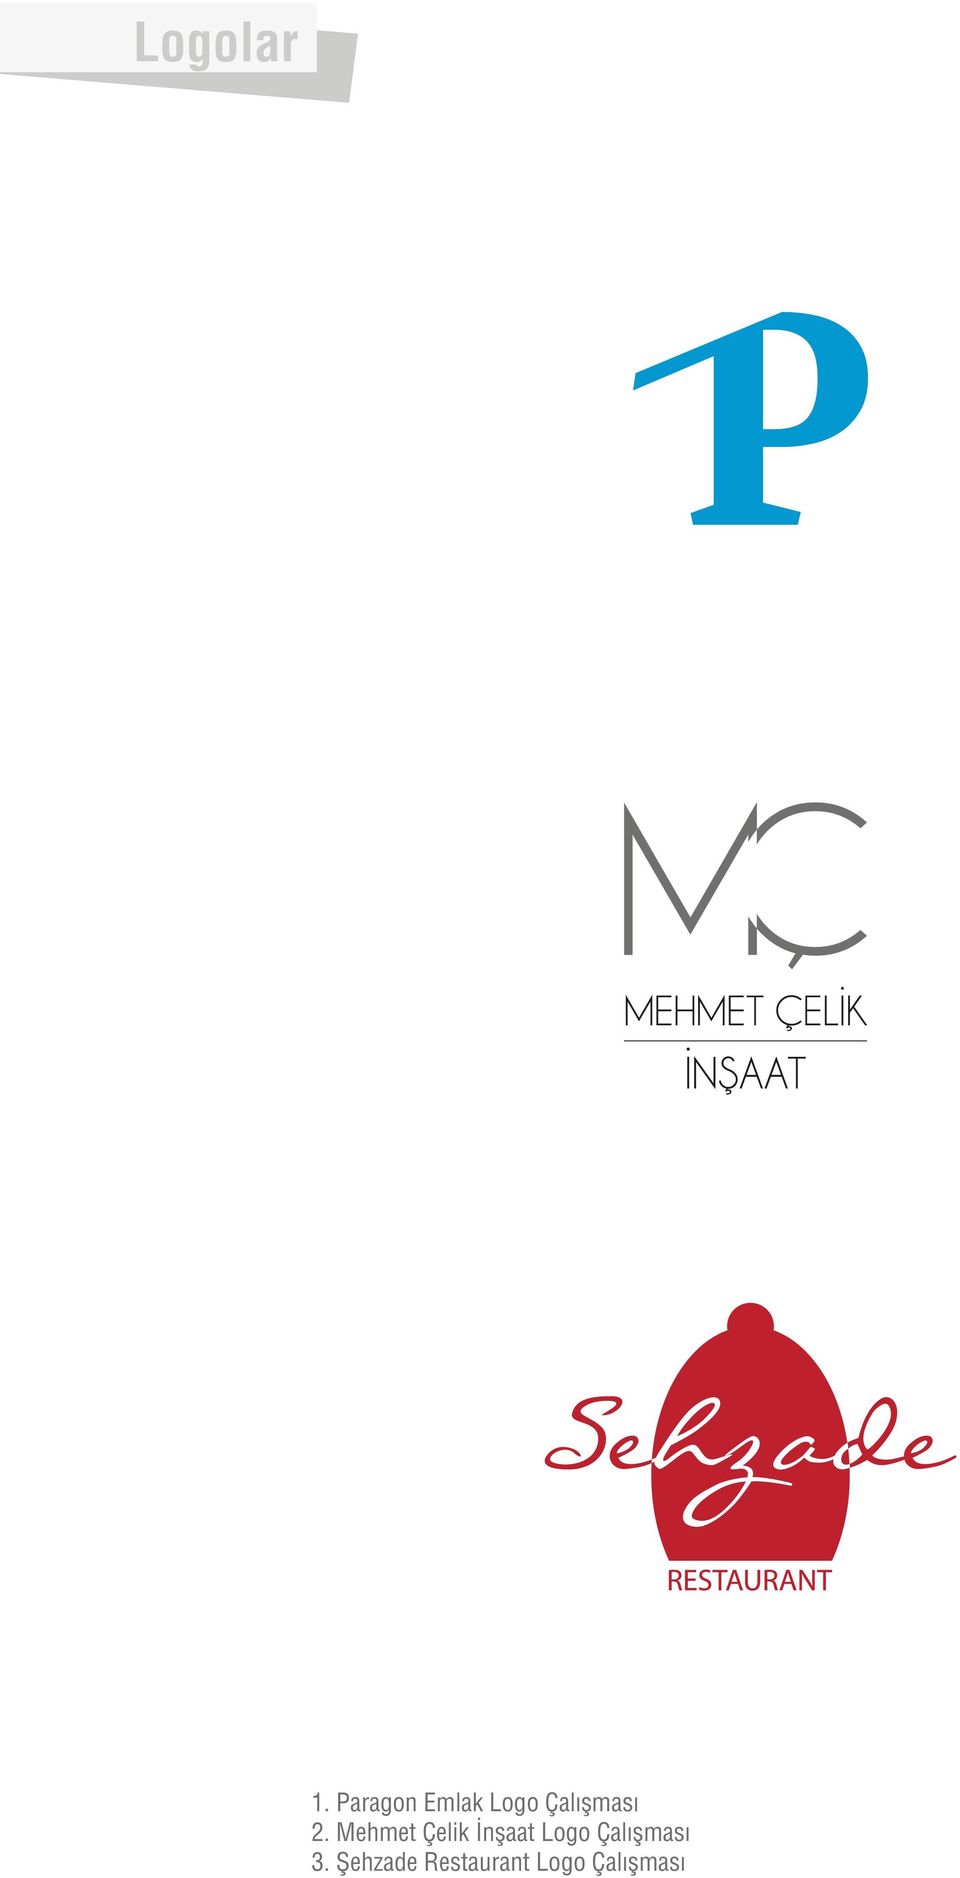 2. Mehmet Çelik İnşaat Logo